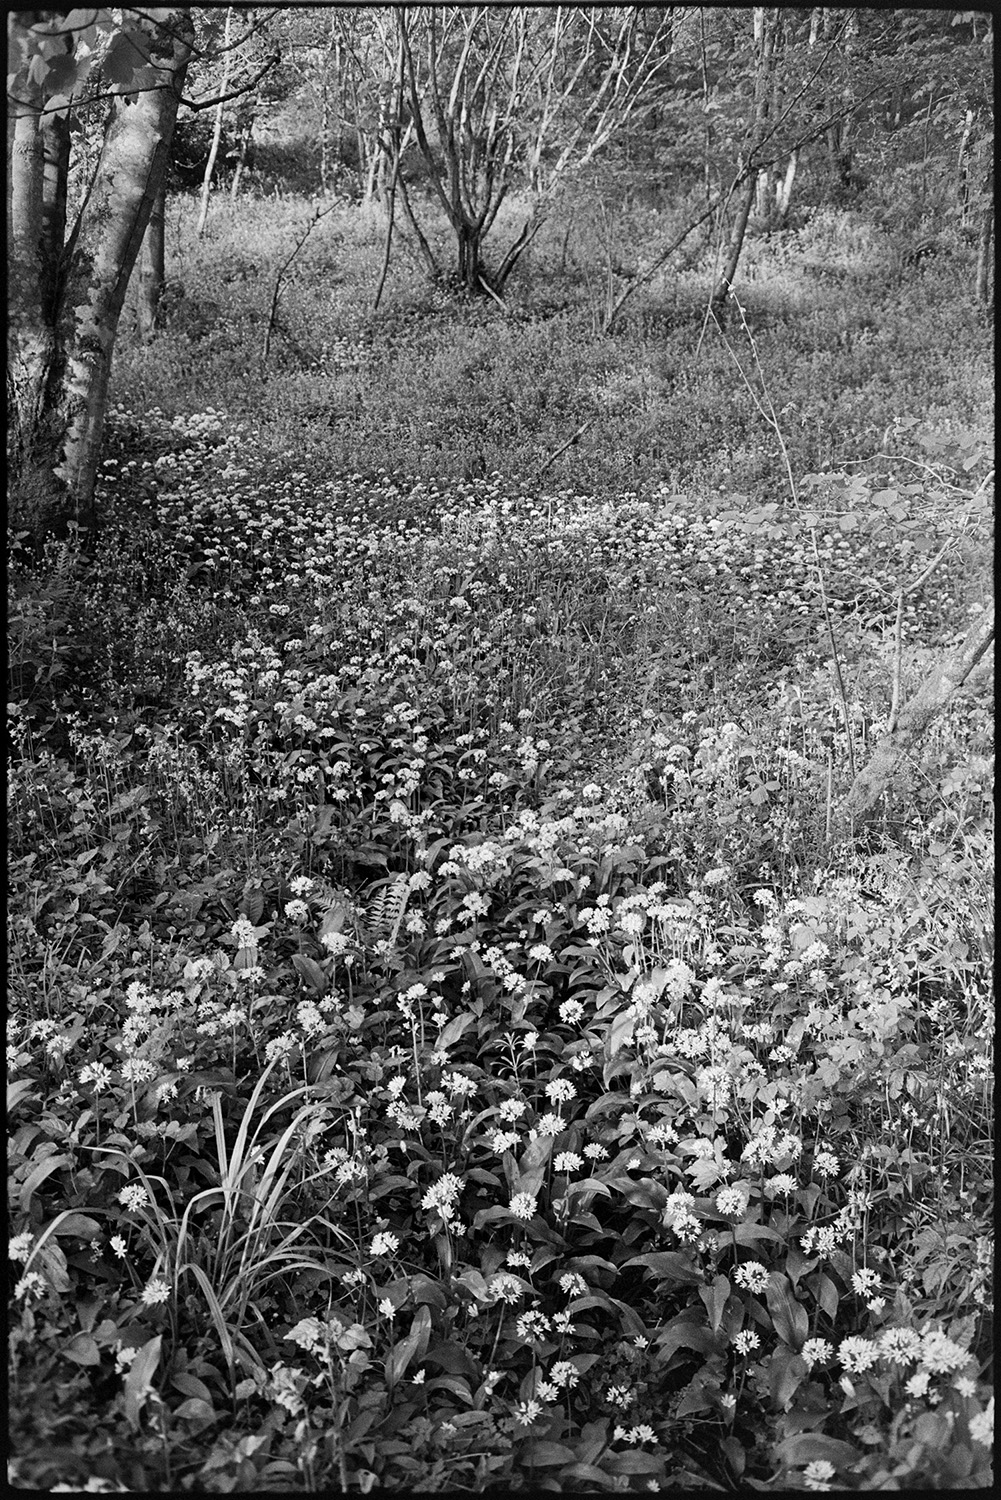 Flowers in wood. Garlic?
[Wild garlic flowers in the woods below Woolridge, Dolton.]